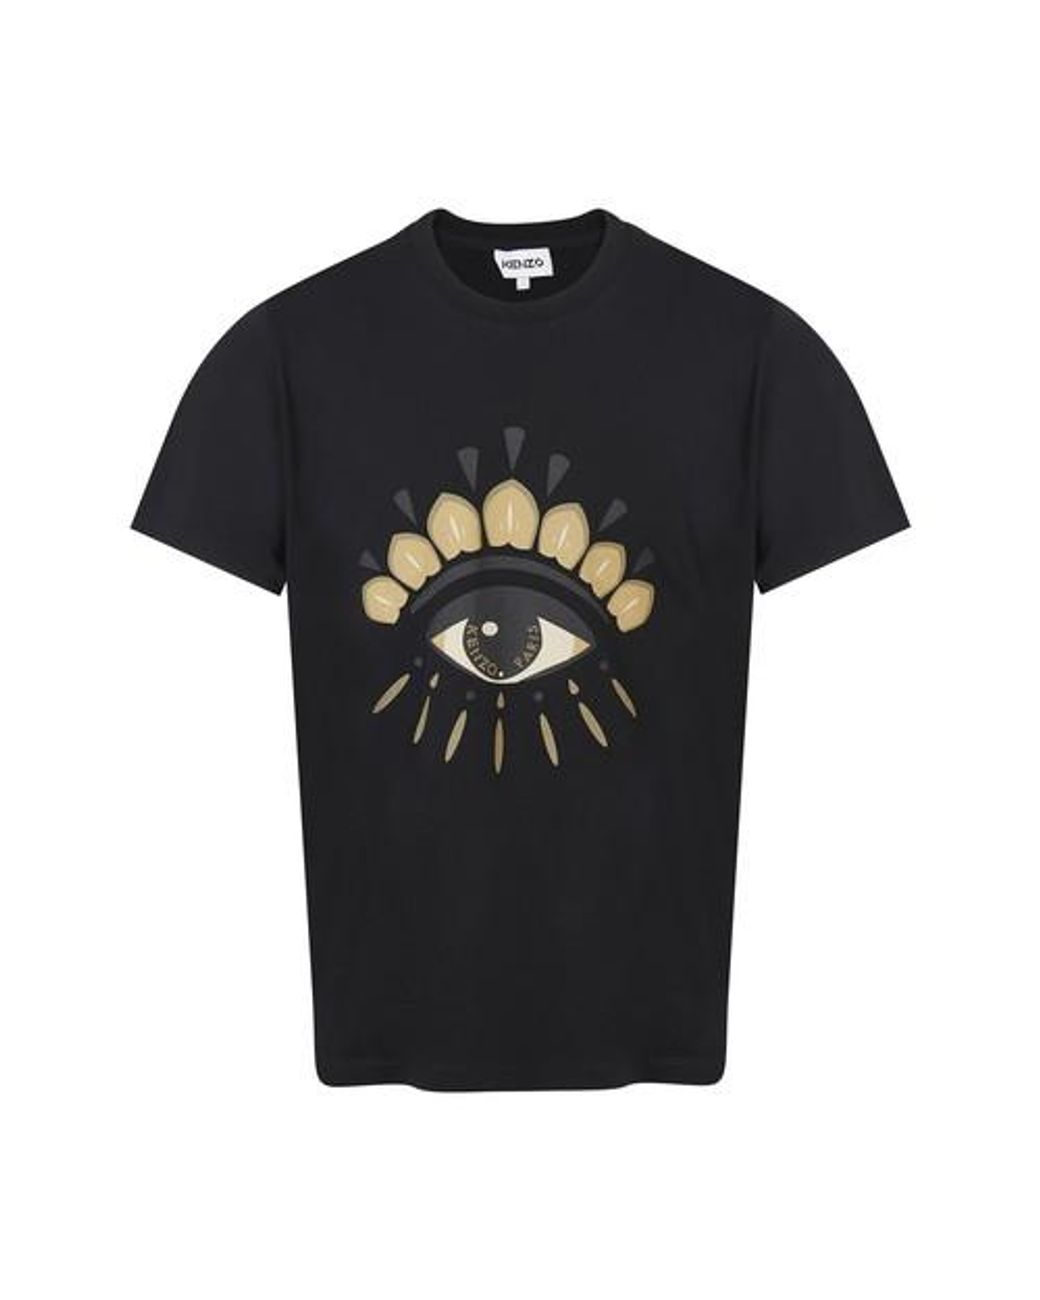 KENZO Eye T-shirt in Black for Men - Lyst